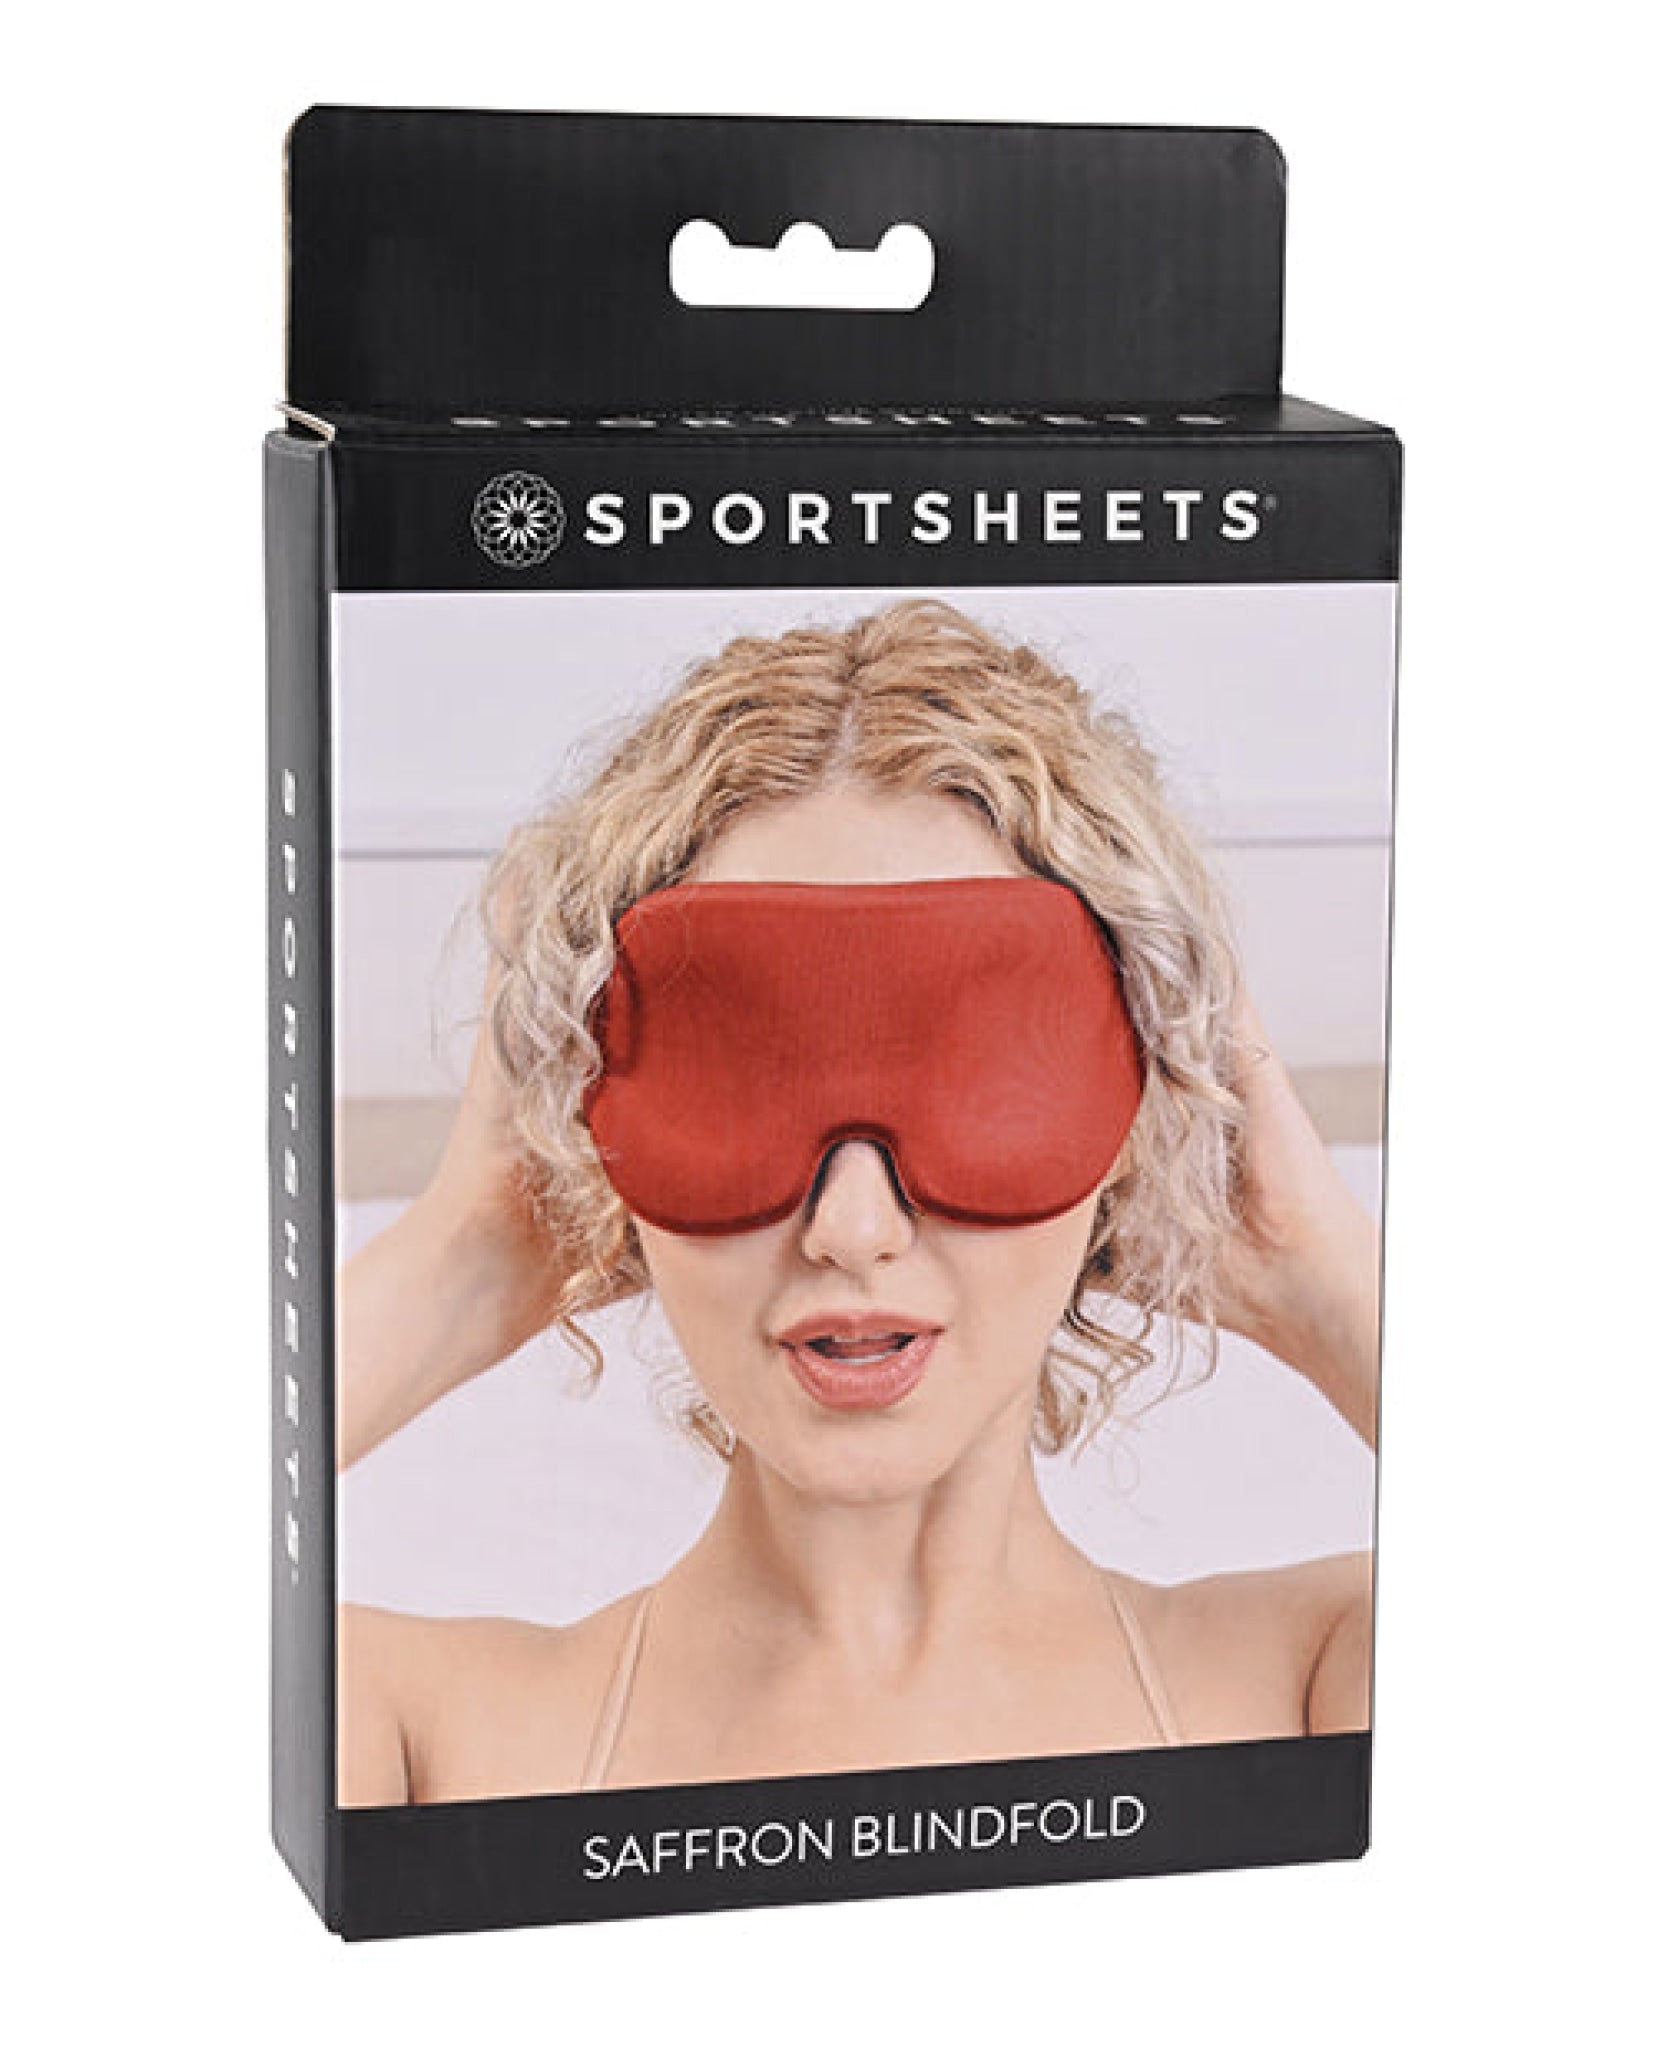 Saffron Blindfold Sportsheets